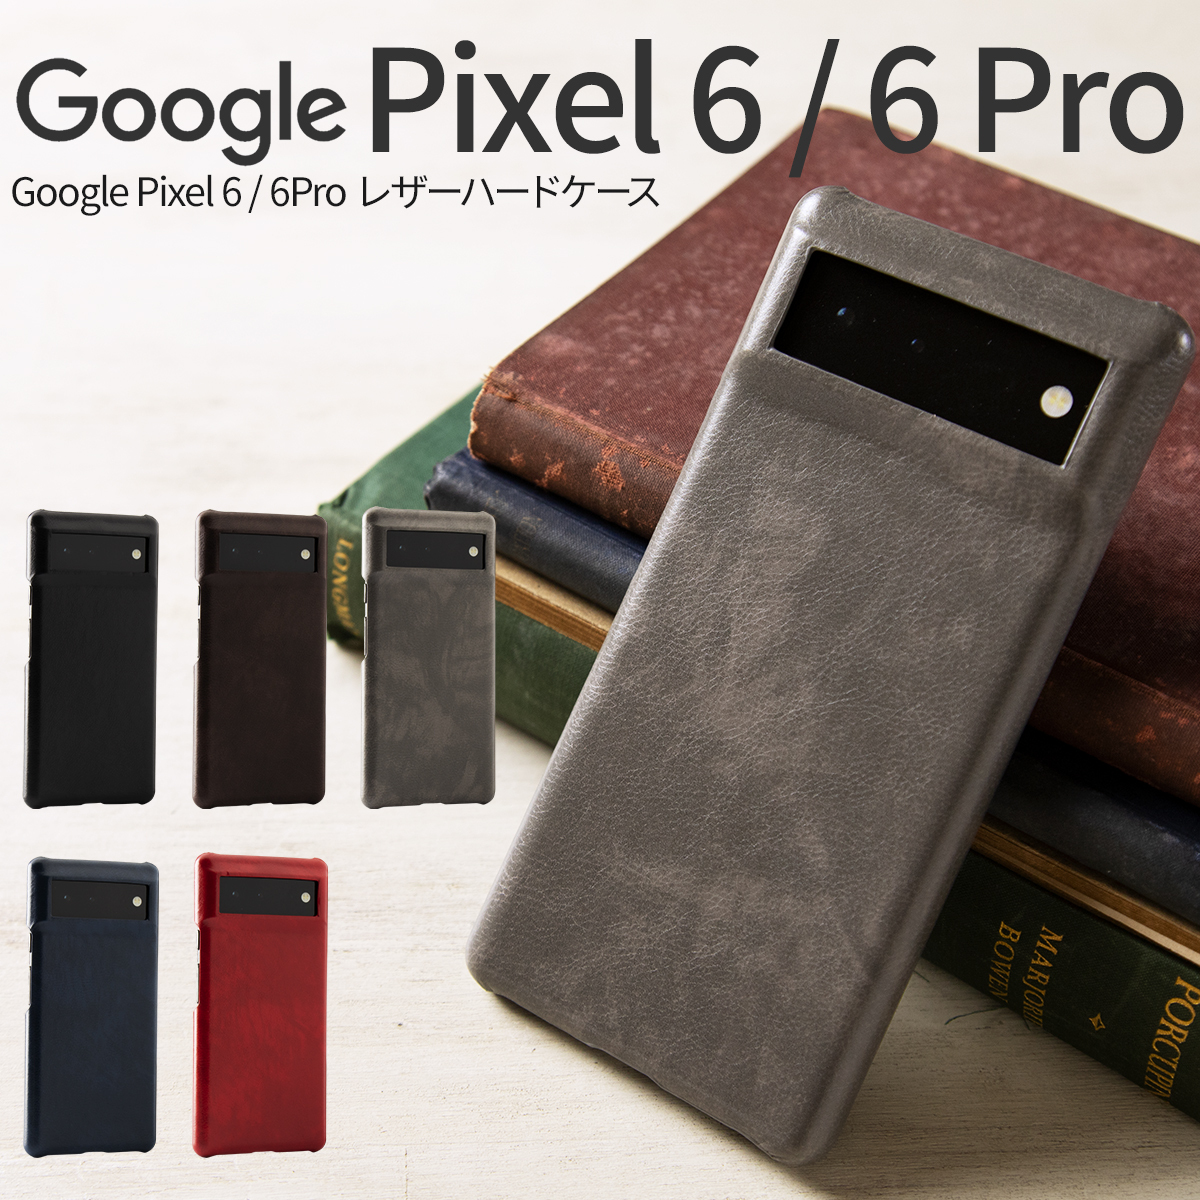 松平商会 Google Pixel 6 Google Pixel 6 Pro レザーハードケース 4589500451827 アンドロイドスマホ用ケースの商品画像